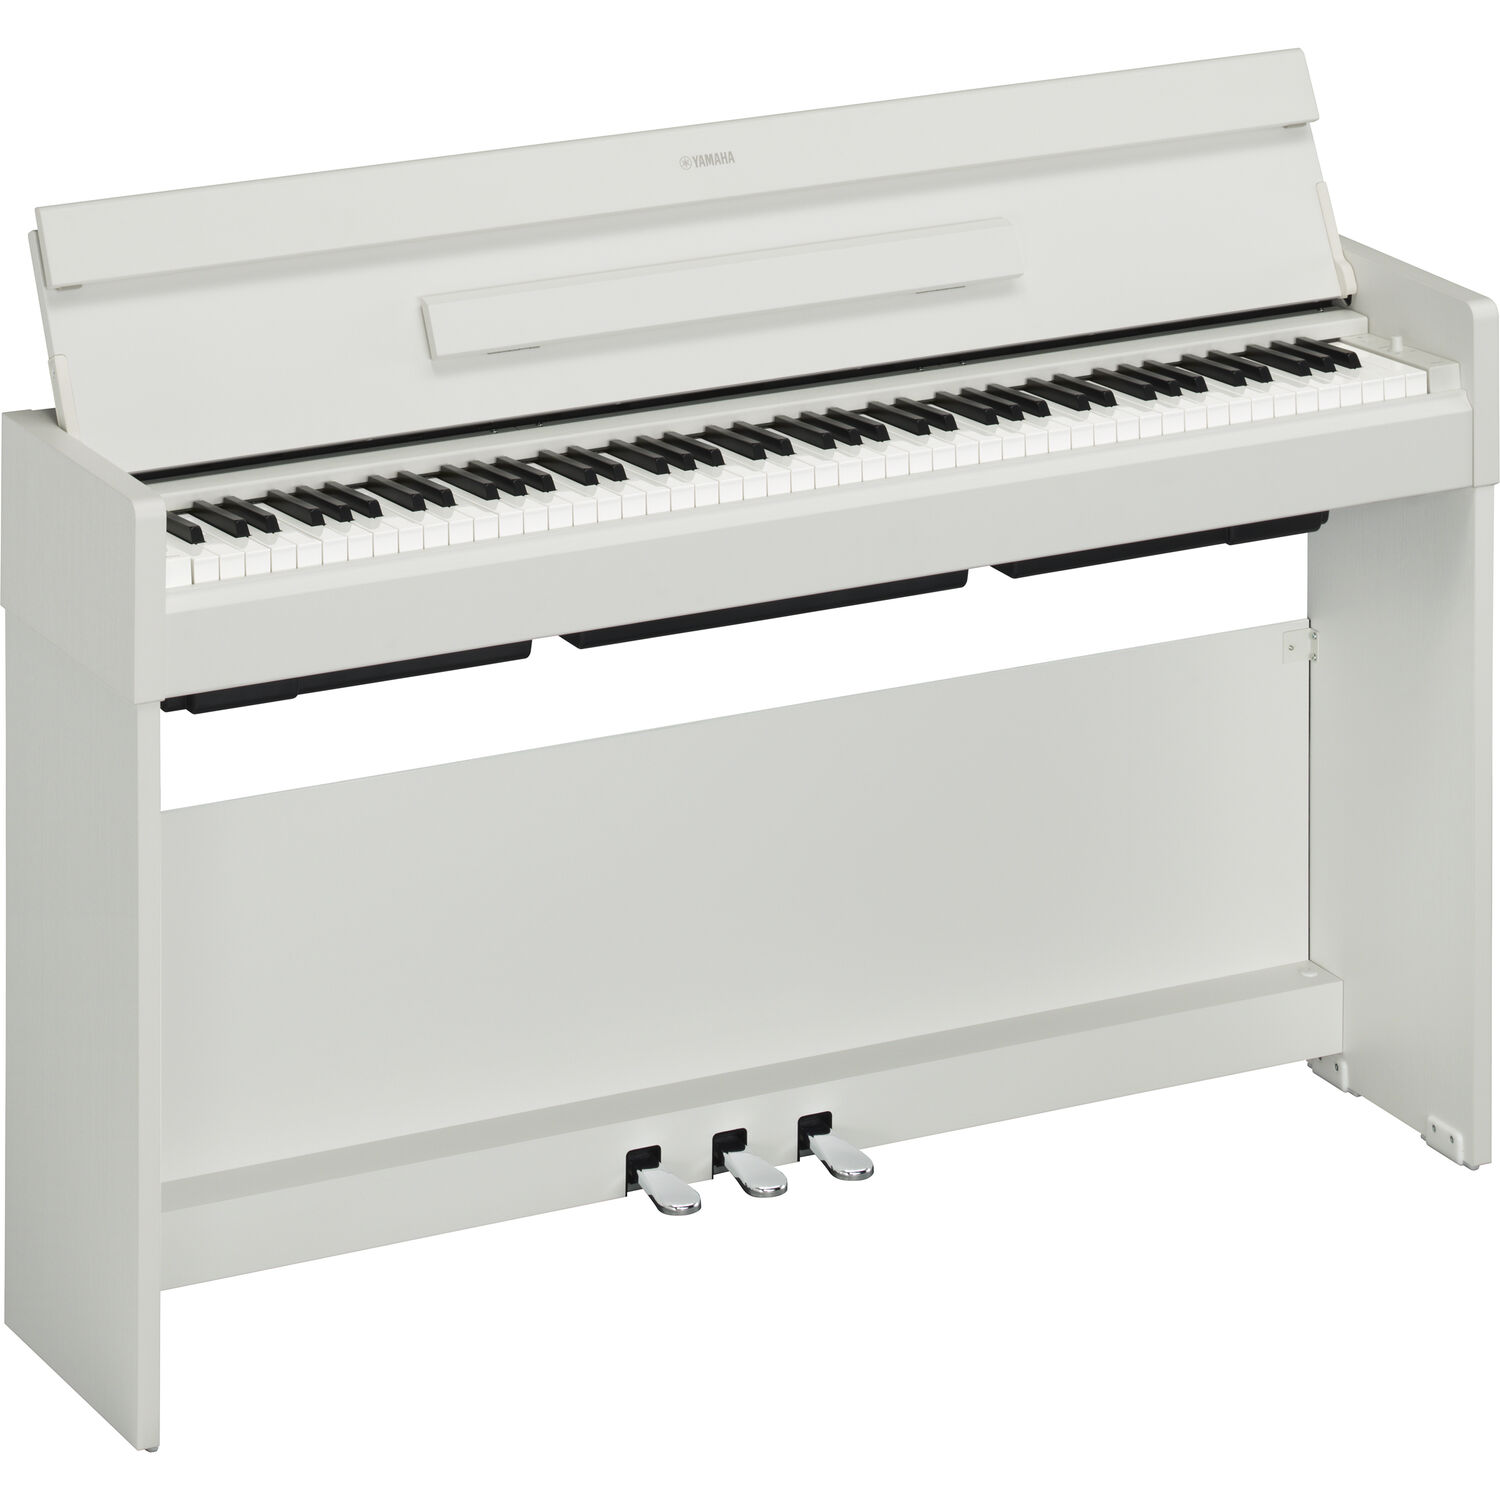 Piano Digital de Consola Yamaha Arius Ydp S35 de 88 Teclas con Cuerpo Delgado Nogal Blanco